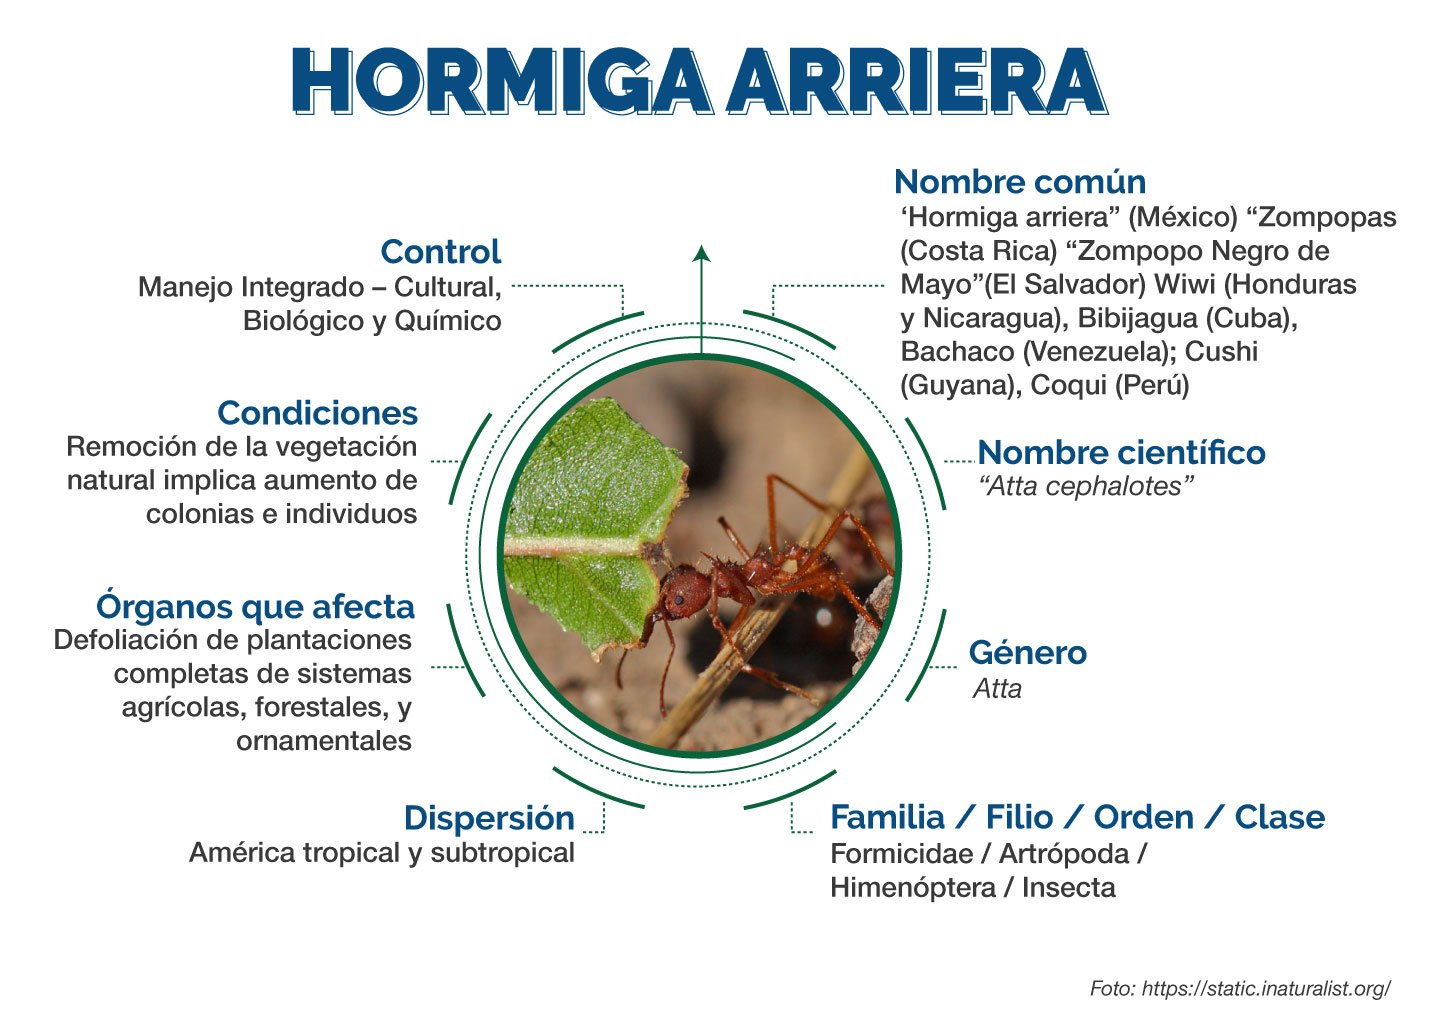 Beneficios de la hormiga arriera como fertilizante natural